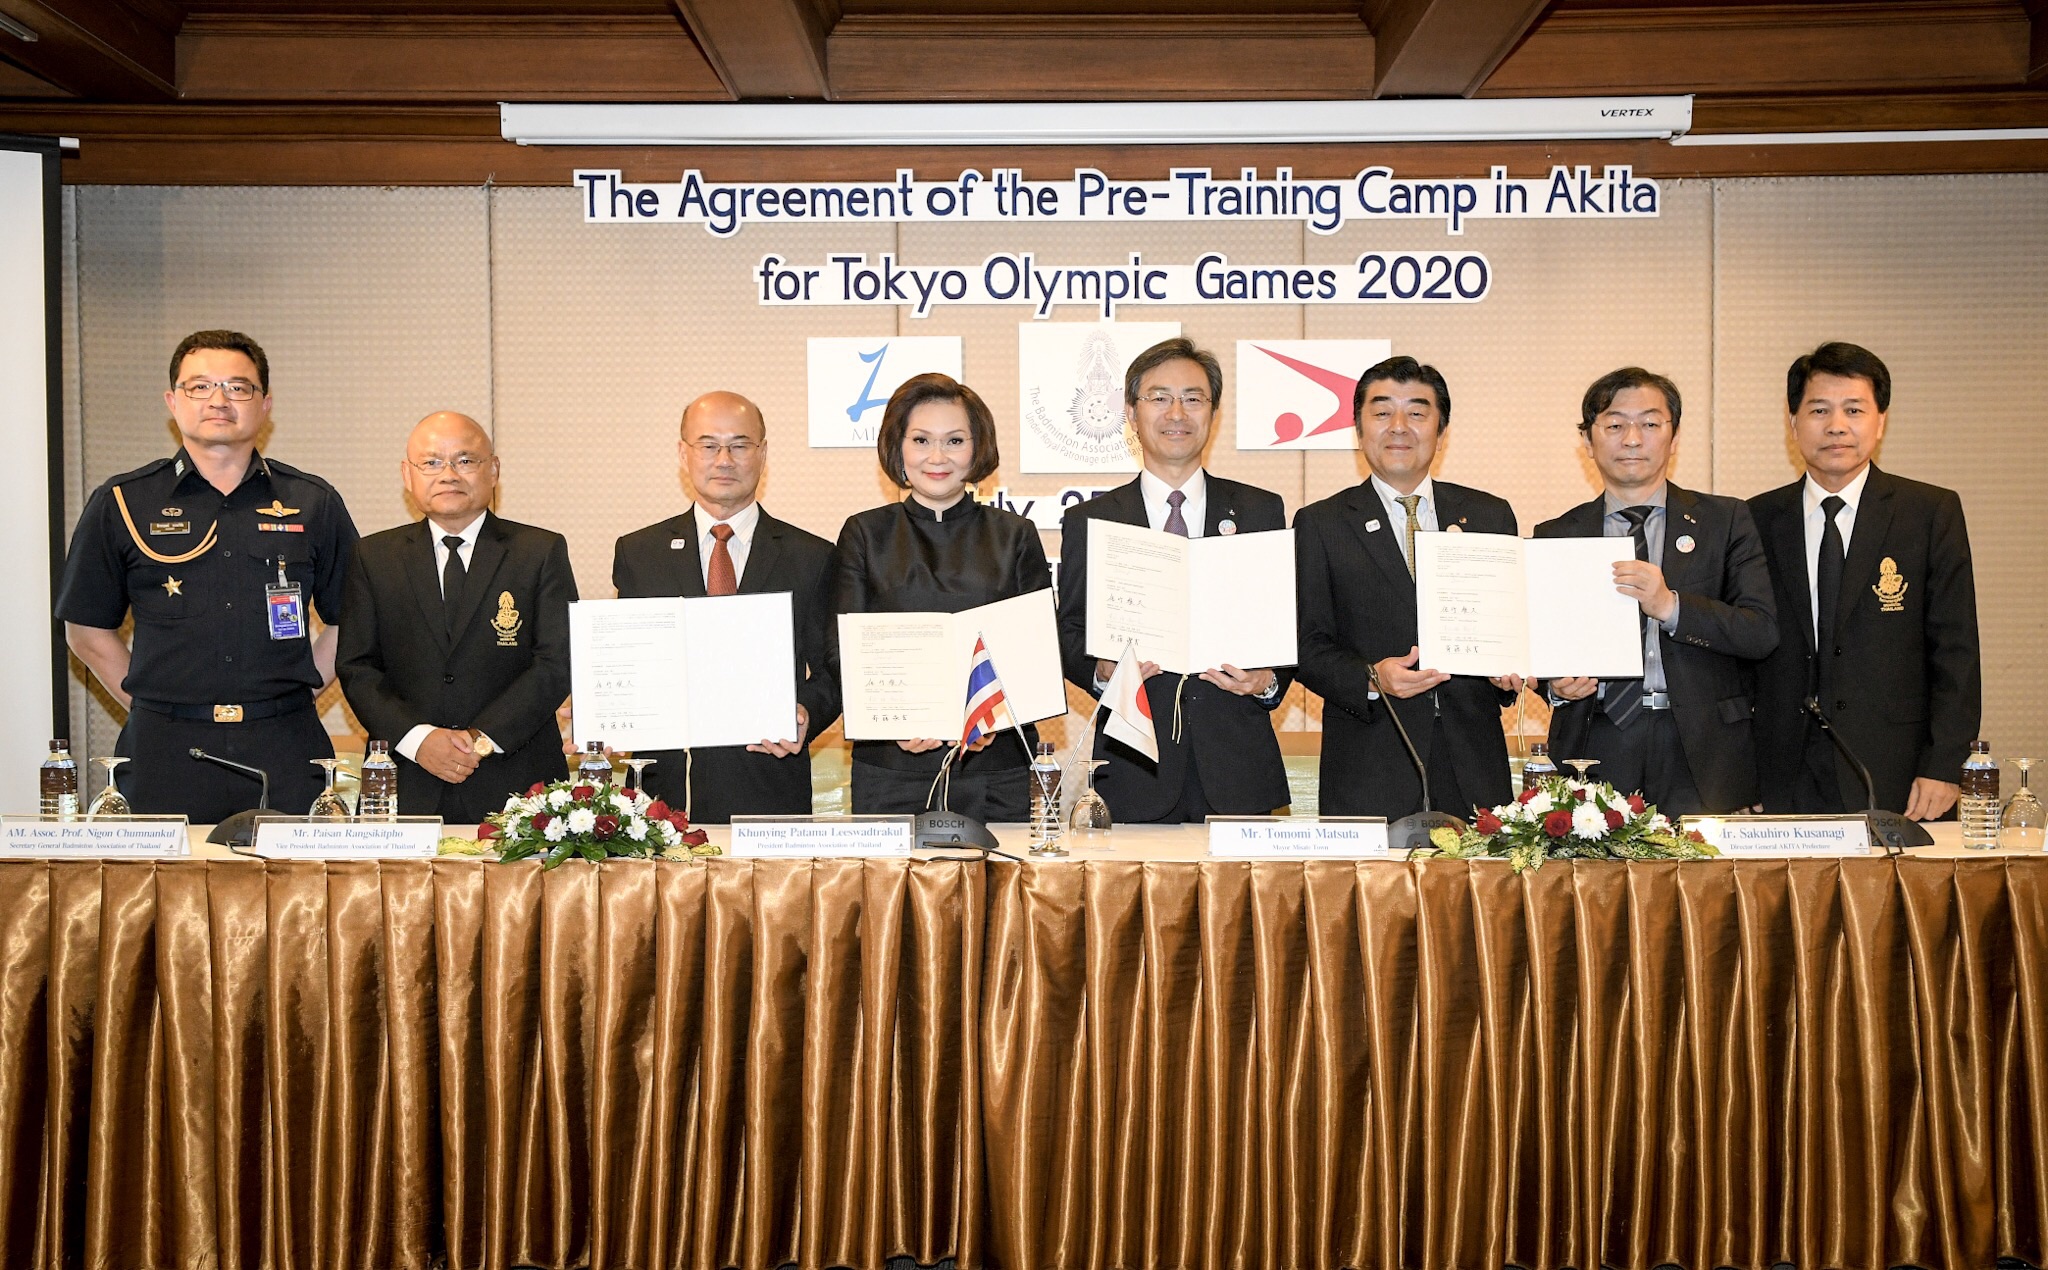 สมาคมแบดฯ ลงนามความร่วมมือกับกลุ่มจังหวัดอาคิตะ เพื่อเก็บตัวฝึกซ้อมโอลิมปิก ปี 2020